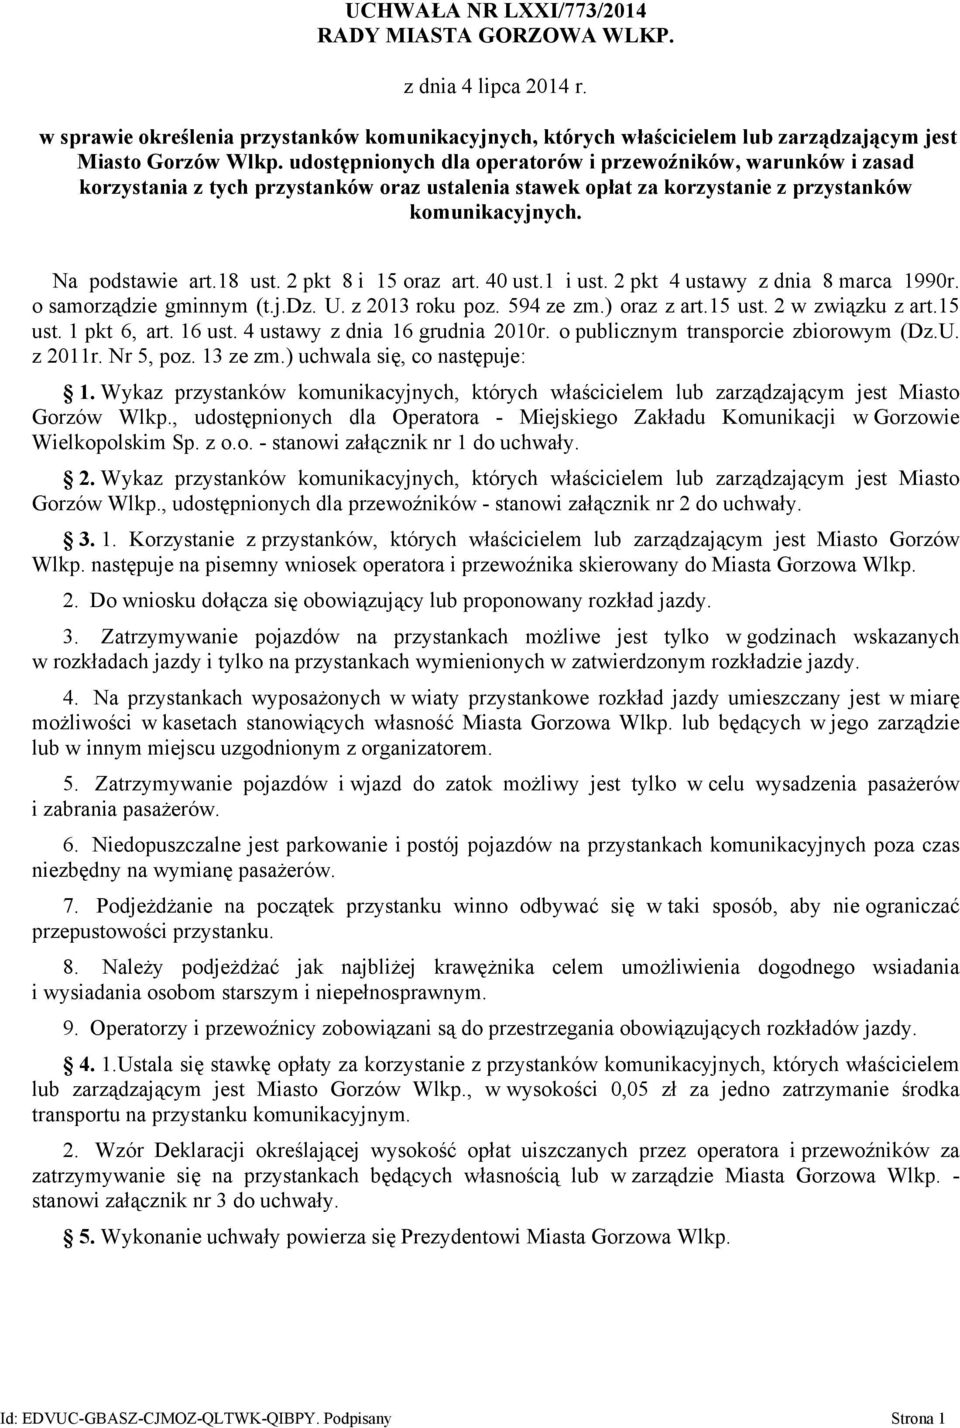 2 pkt 8 i 15 oraz art. 40 ust.1 i ust. 2 pkt 4 ustawy z dnia 8 marca 1990r. o samorządzie gminnym (t.j.dz. U. z 2013 roku poz. 594 ze zm.) oraz z art.15 ust. 2 w związku z art.15 ust. 1 pkt 6, art.